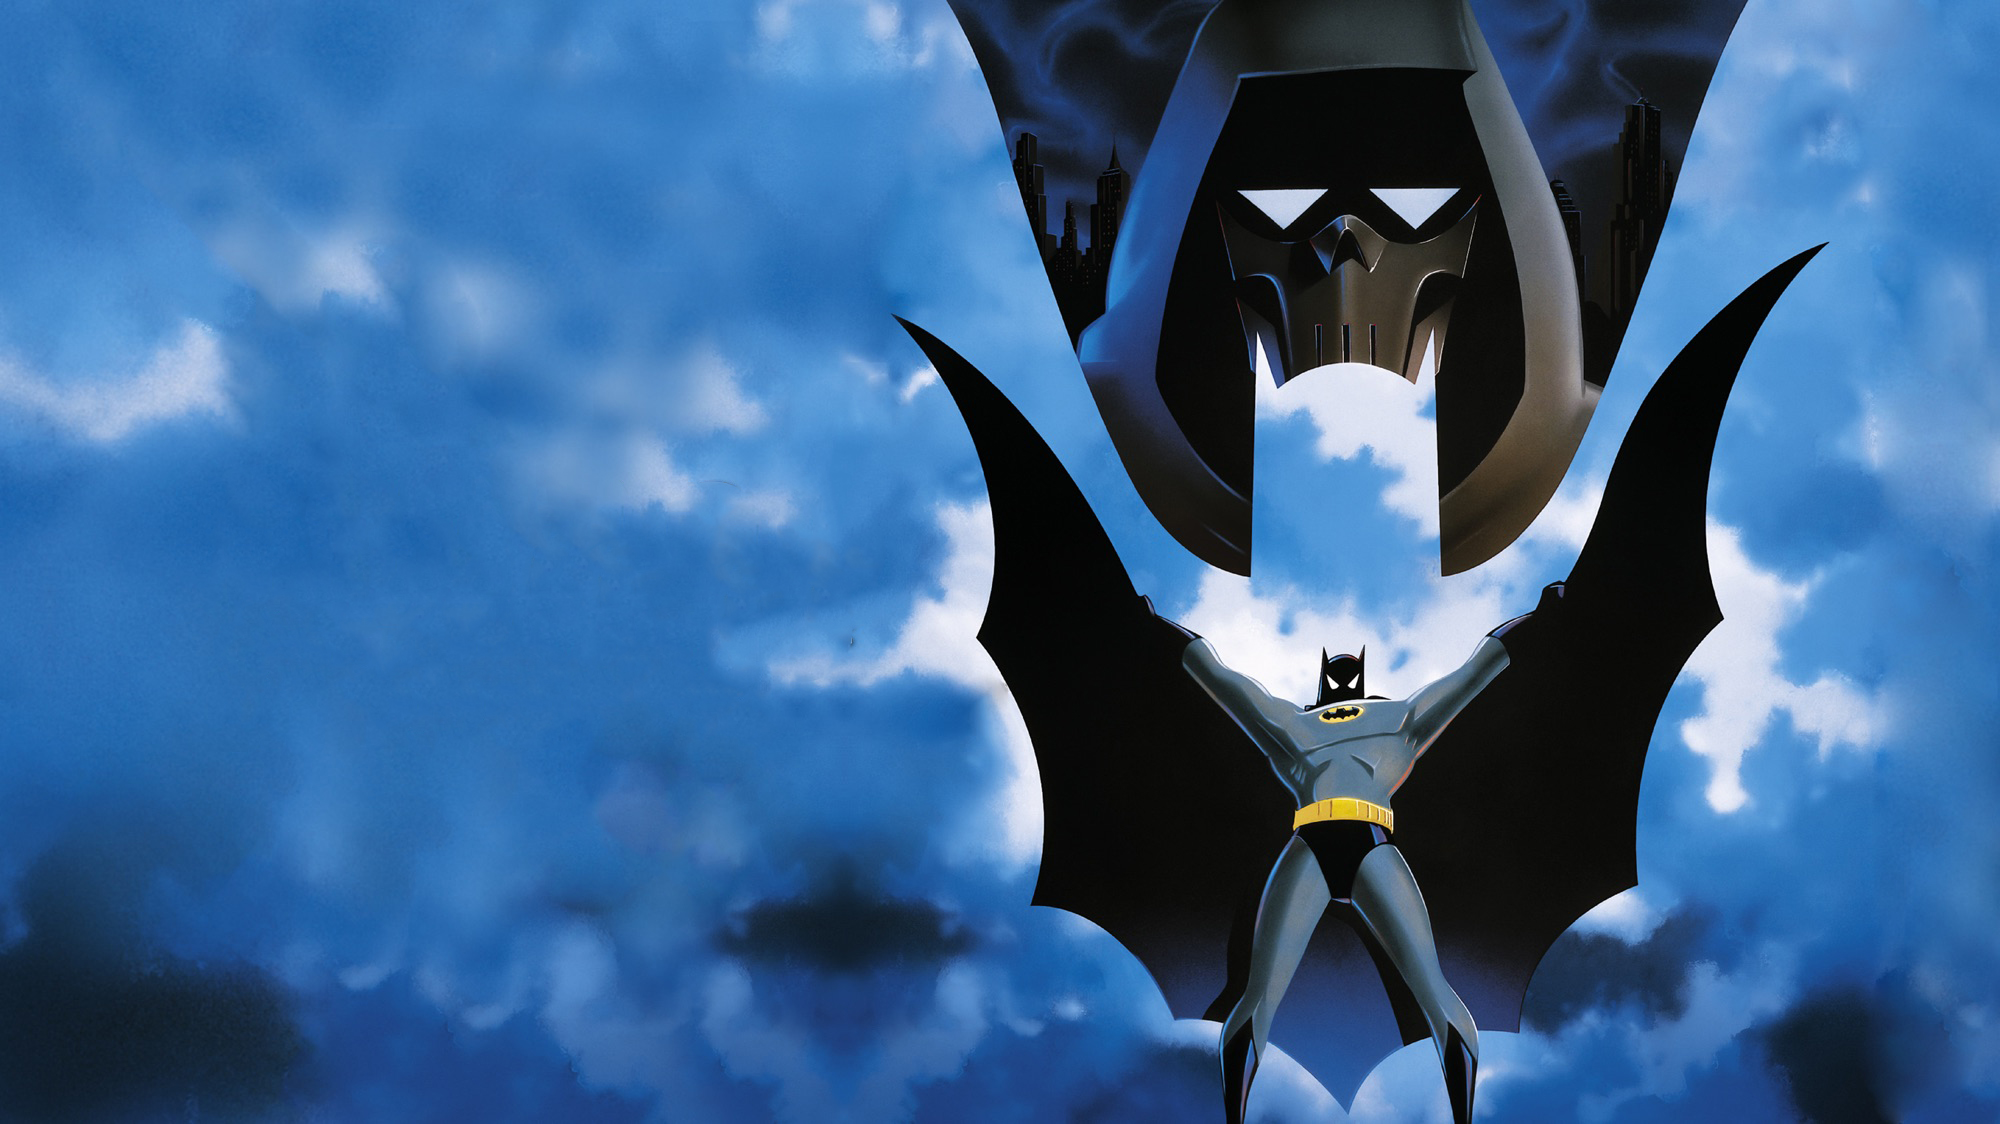 Die besten Batman Und Das Phantom-Hintergründe für den Telefonbildschirm